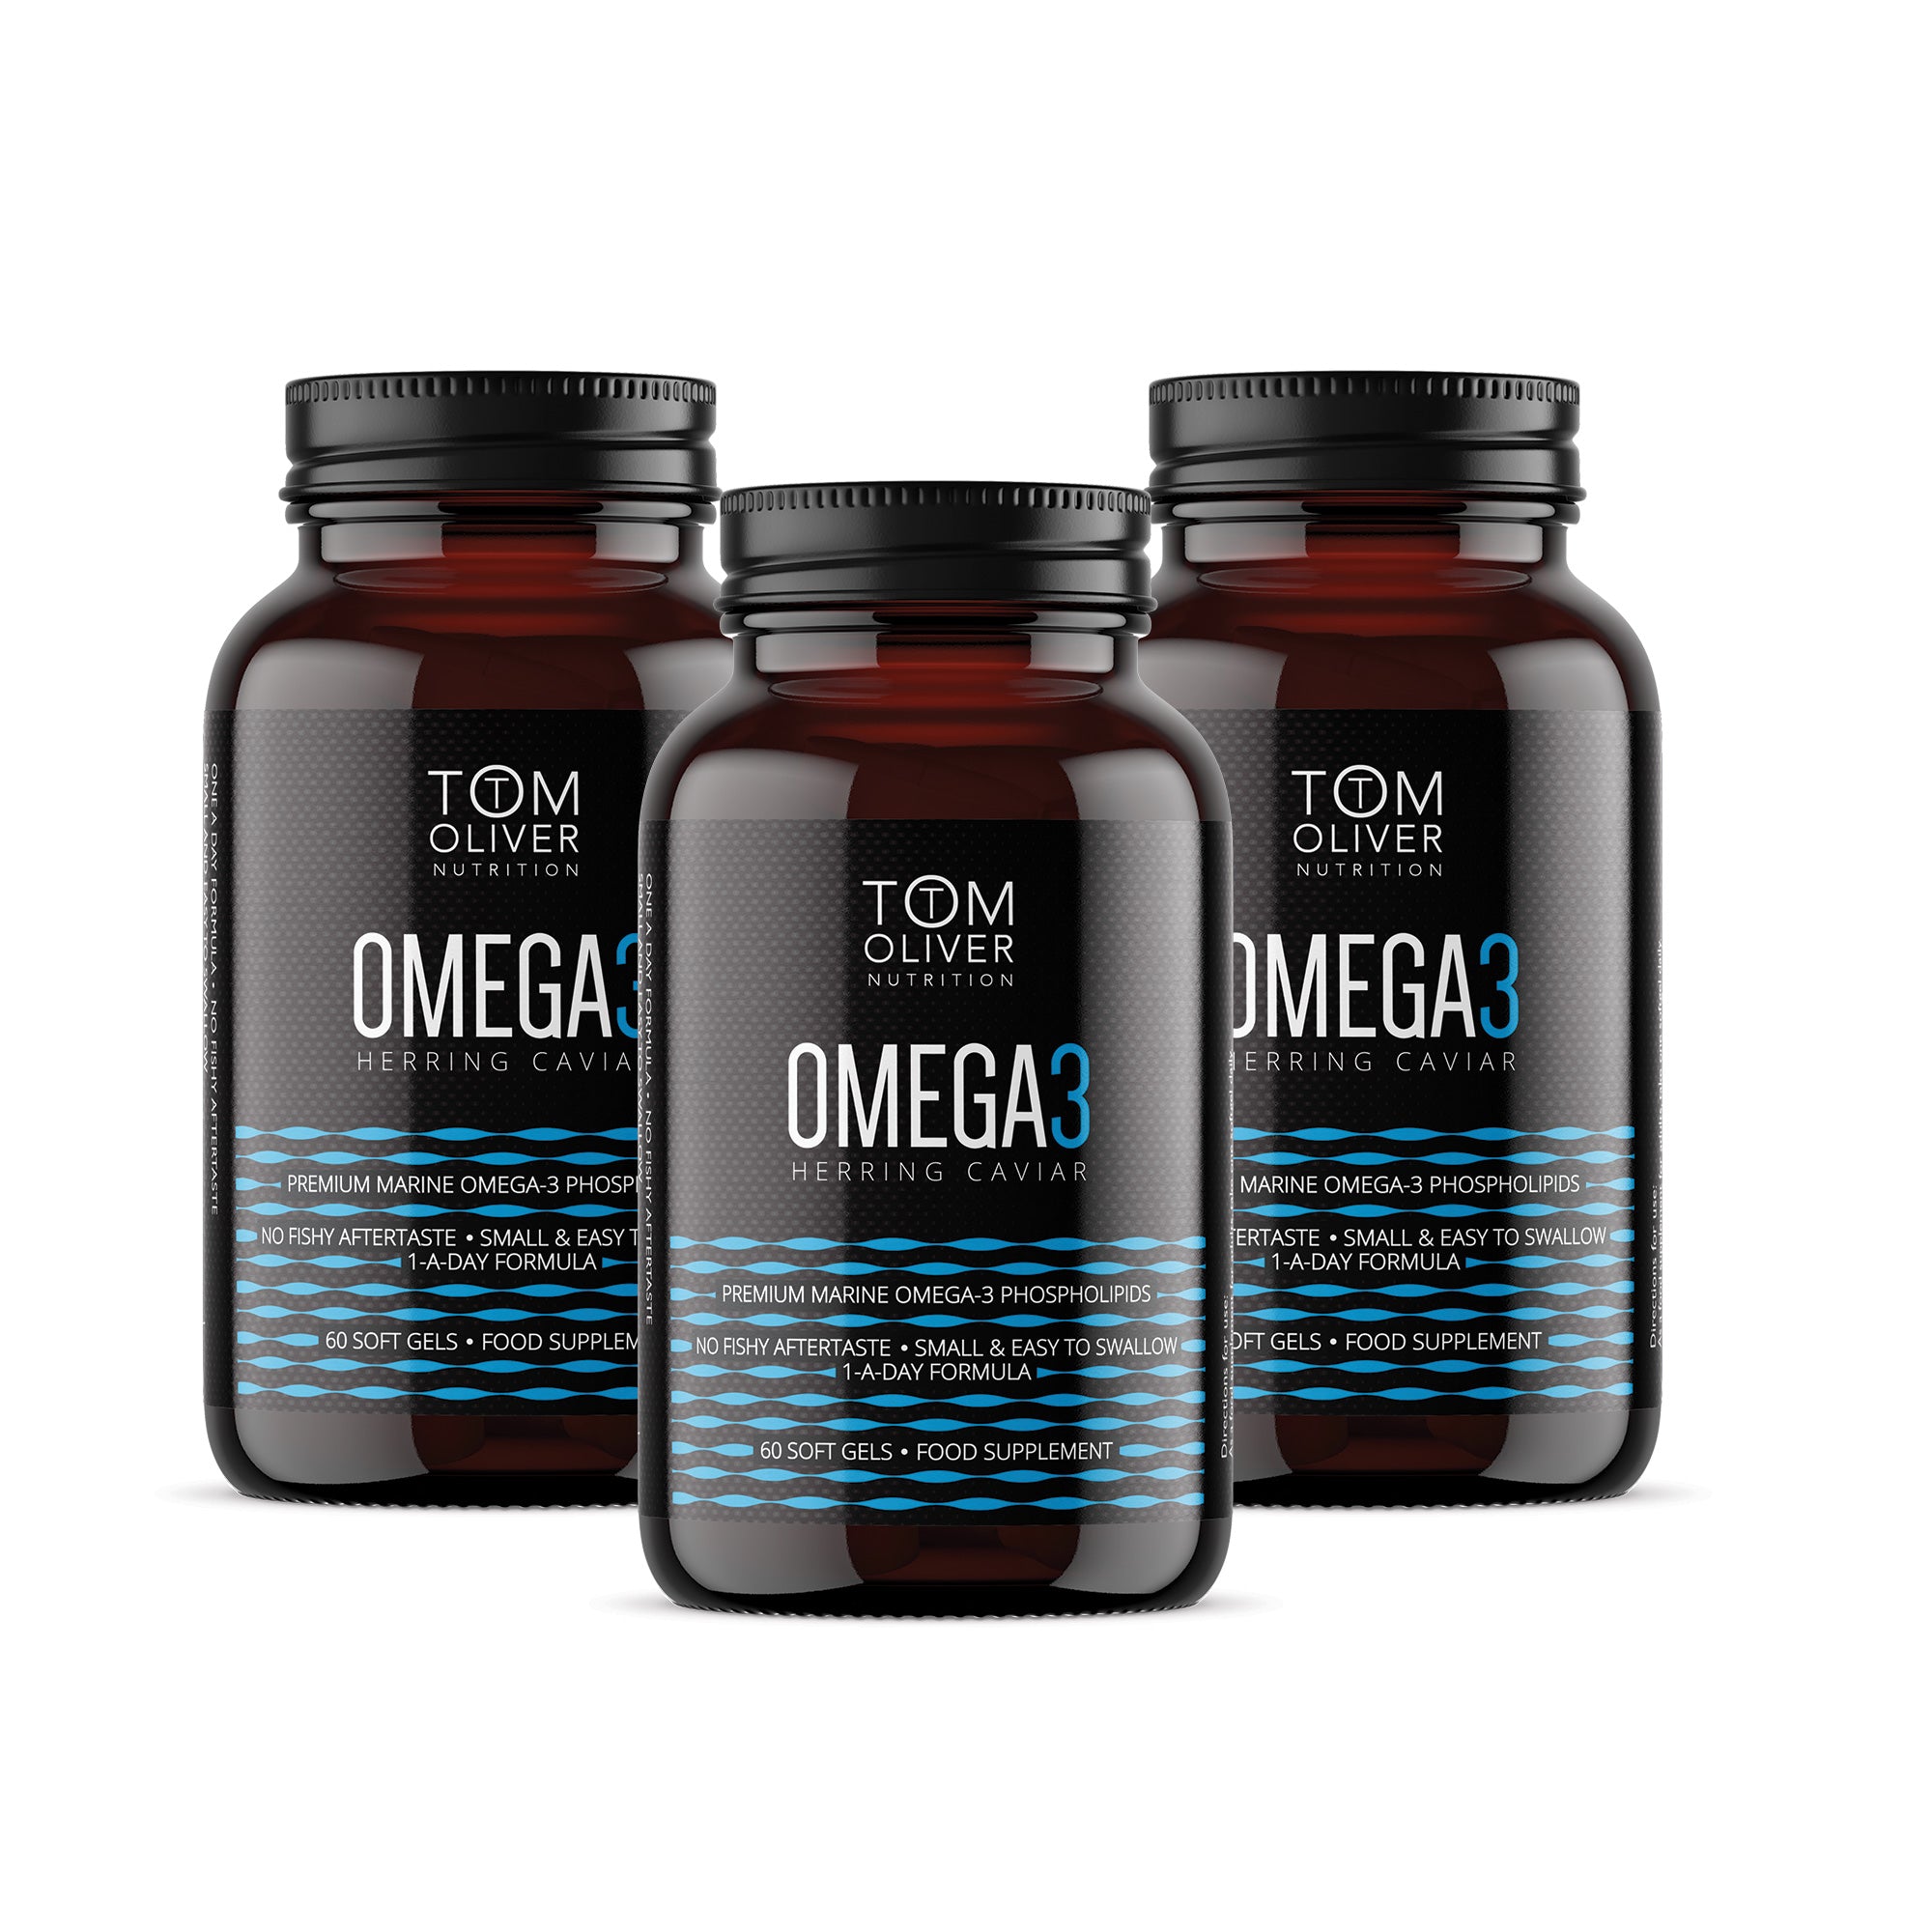 أوميغا 3 رنج كافيار عرض حزمة (3 زجاجات)